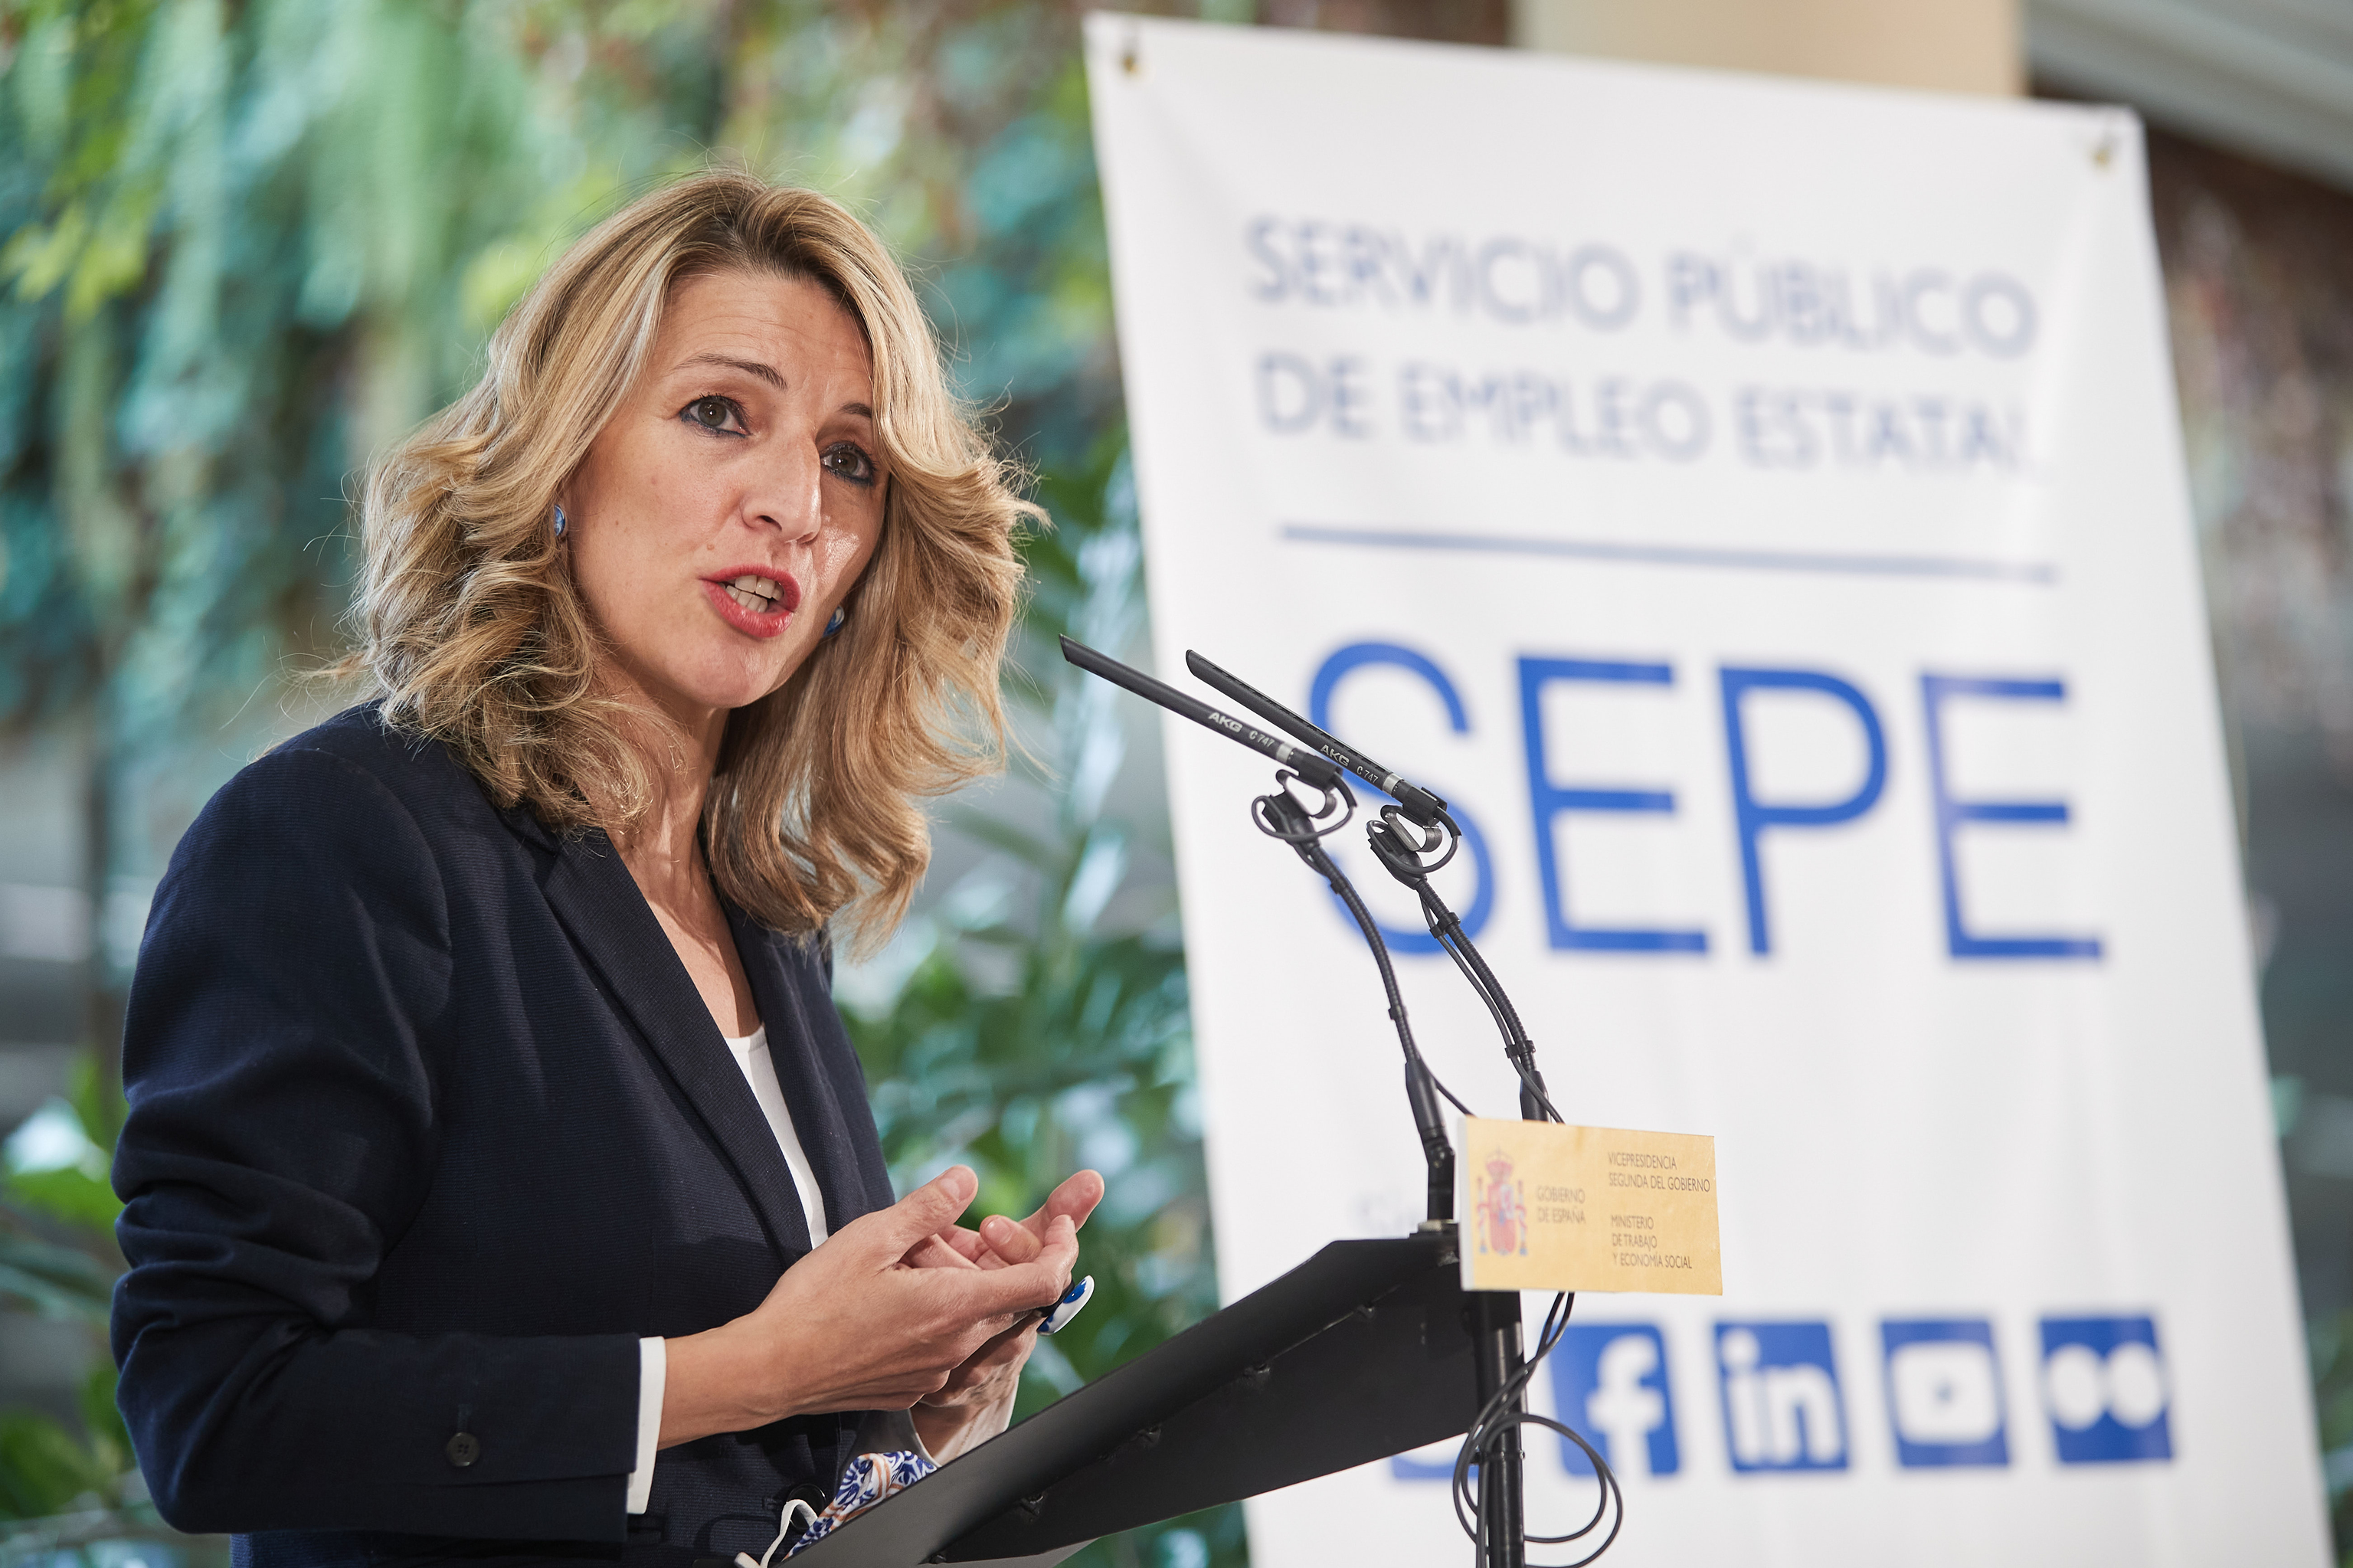 La vicepresidenta segunda del Gobierno y ministra de Trabajo y Economa Social , Yolanda Daz interviene en la visita realizada en SEPE de Madrid.